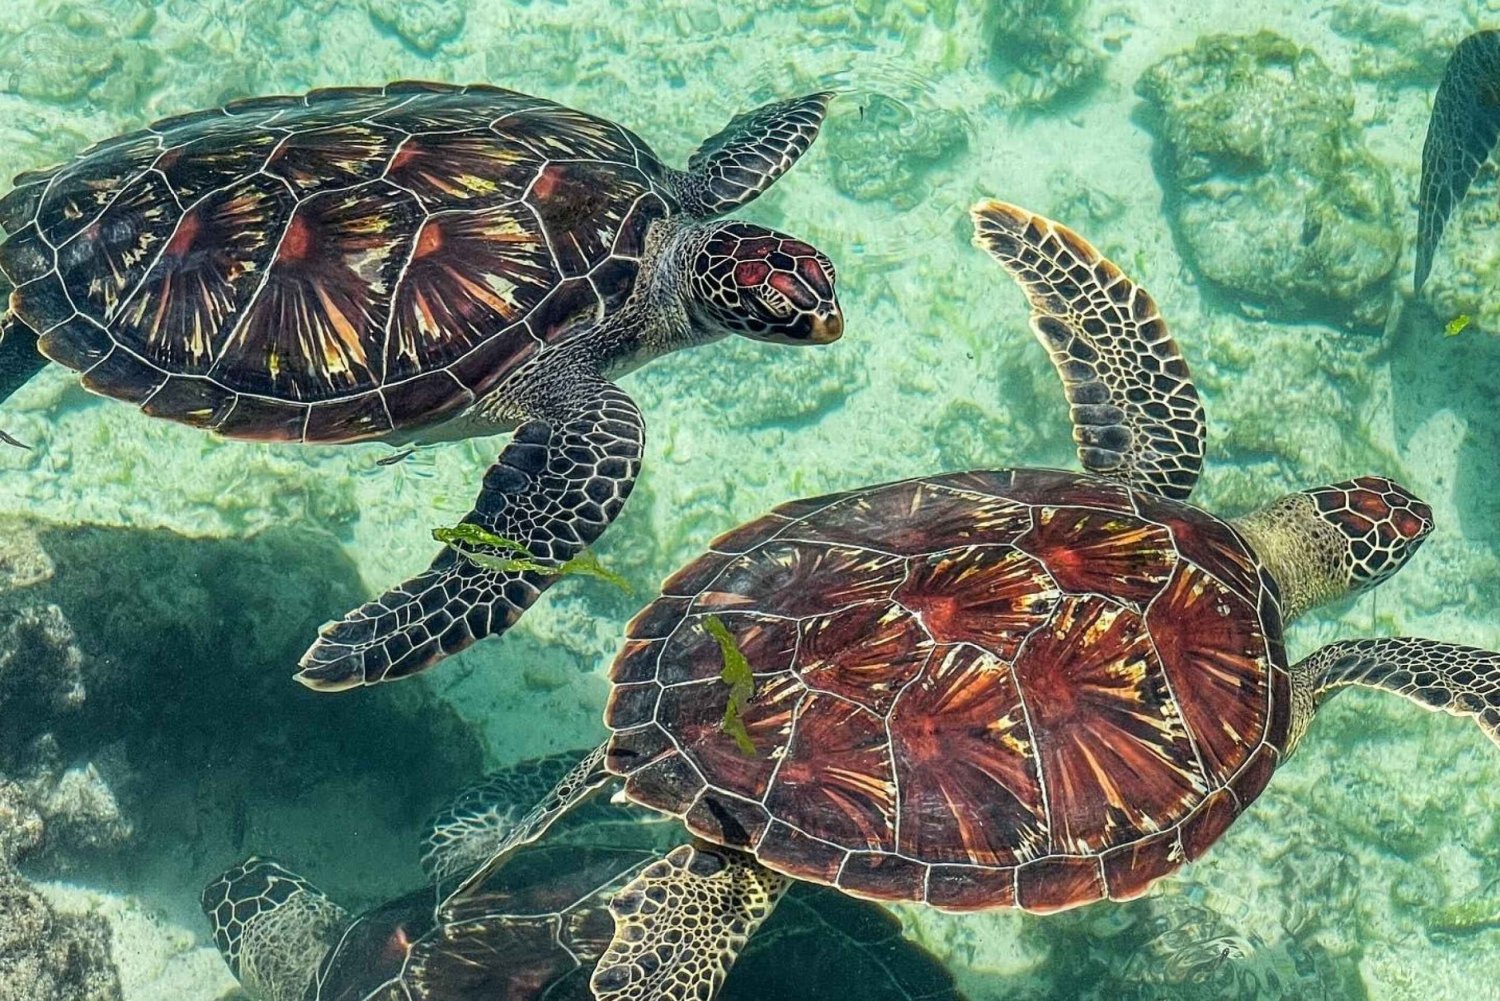 Zanzibar: Simning med sköldpaddor